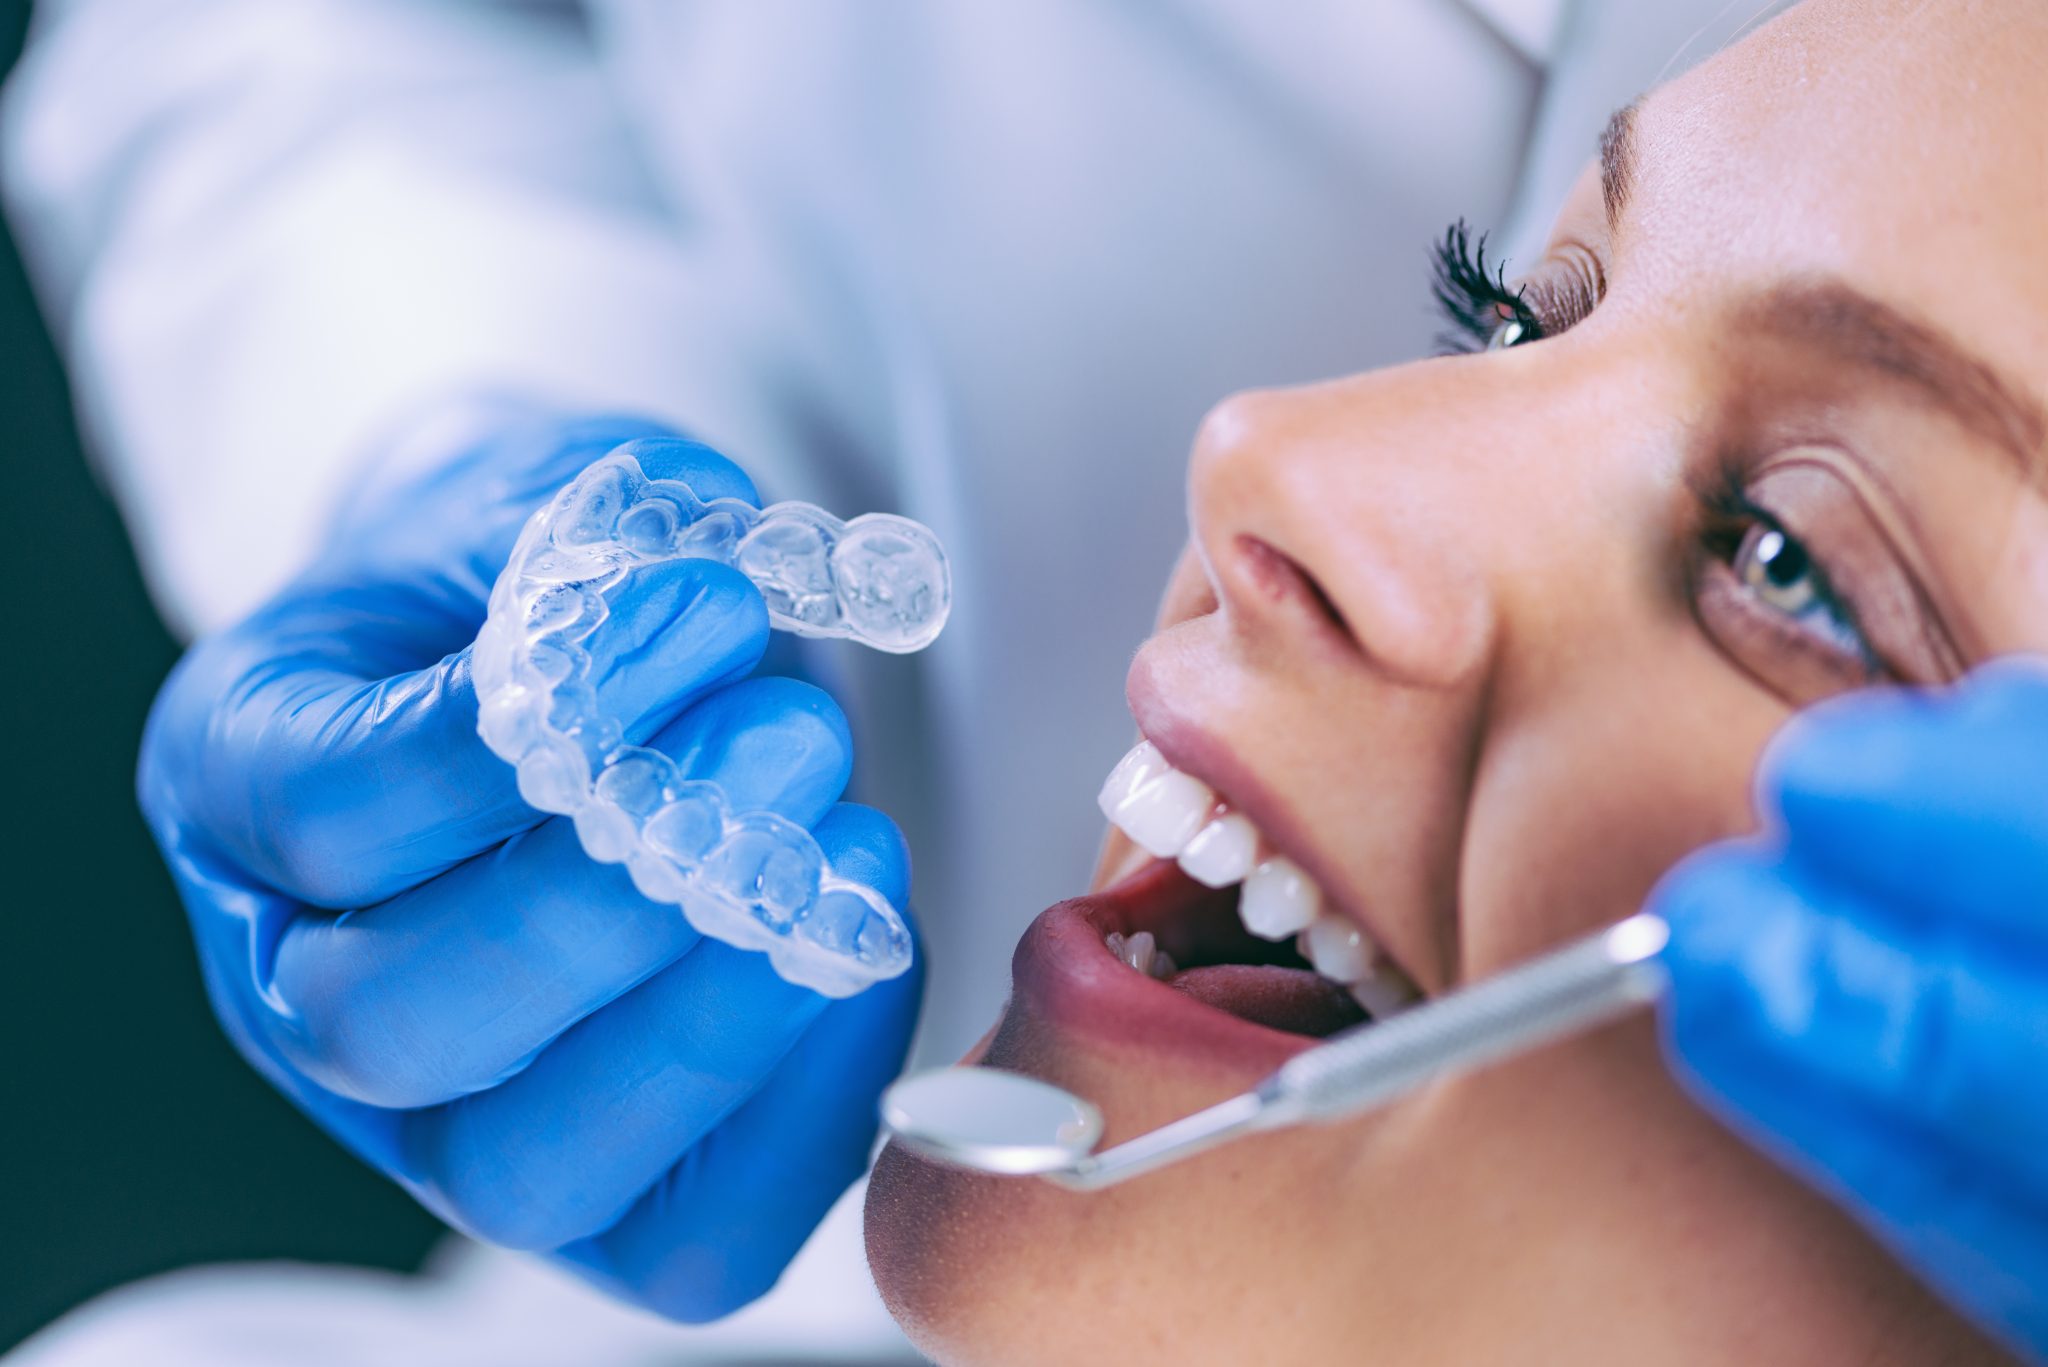 Quando você deve fazer um clareamento dental? - image clareamento-dental-procedimento-1-scaled on https://molinosodontologia.com.br